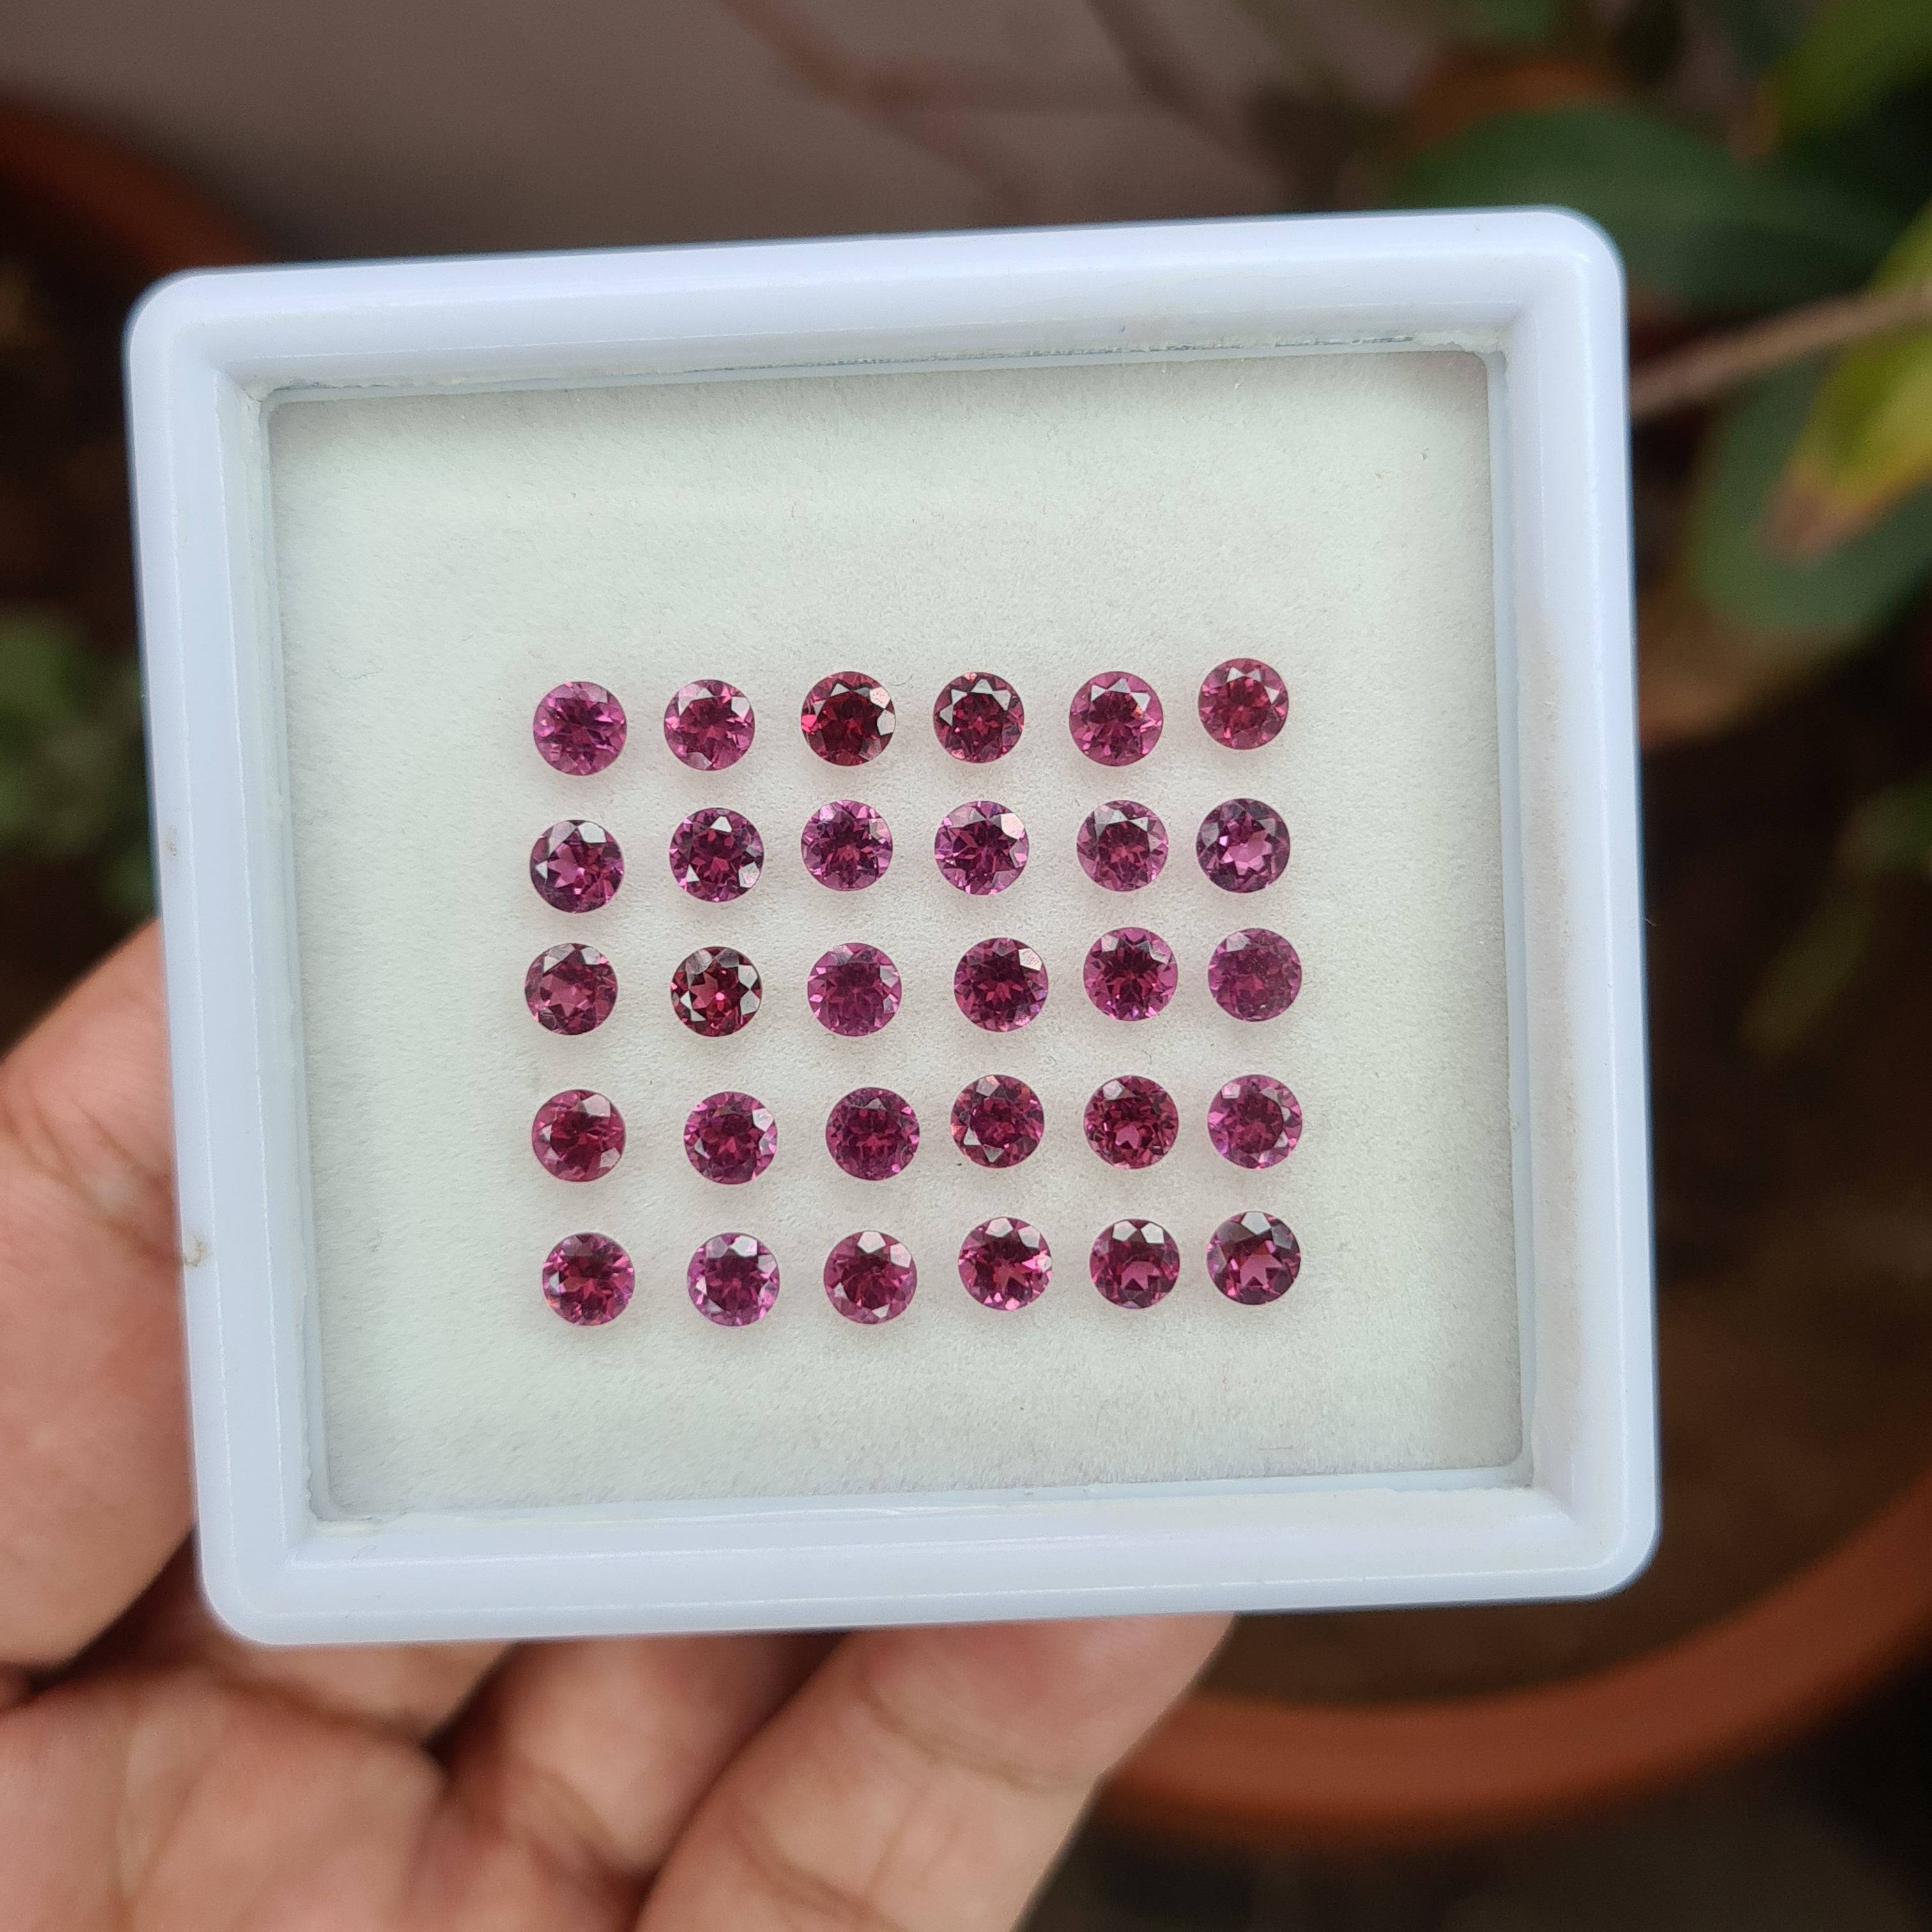 30 Pcs Natural Pink Garnet Faceted Gemstone |  Size 4mm - The LabradoriteKing